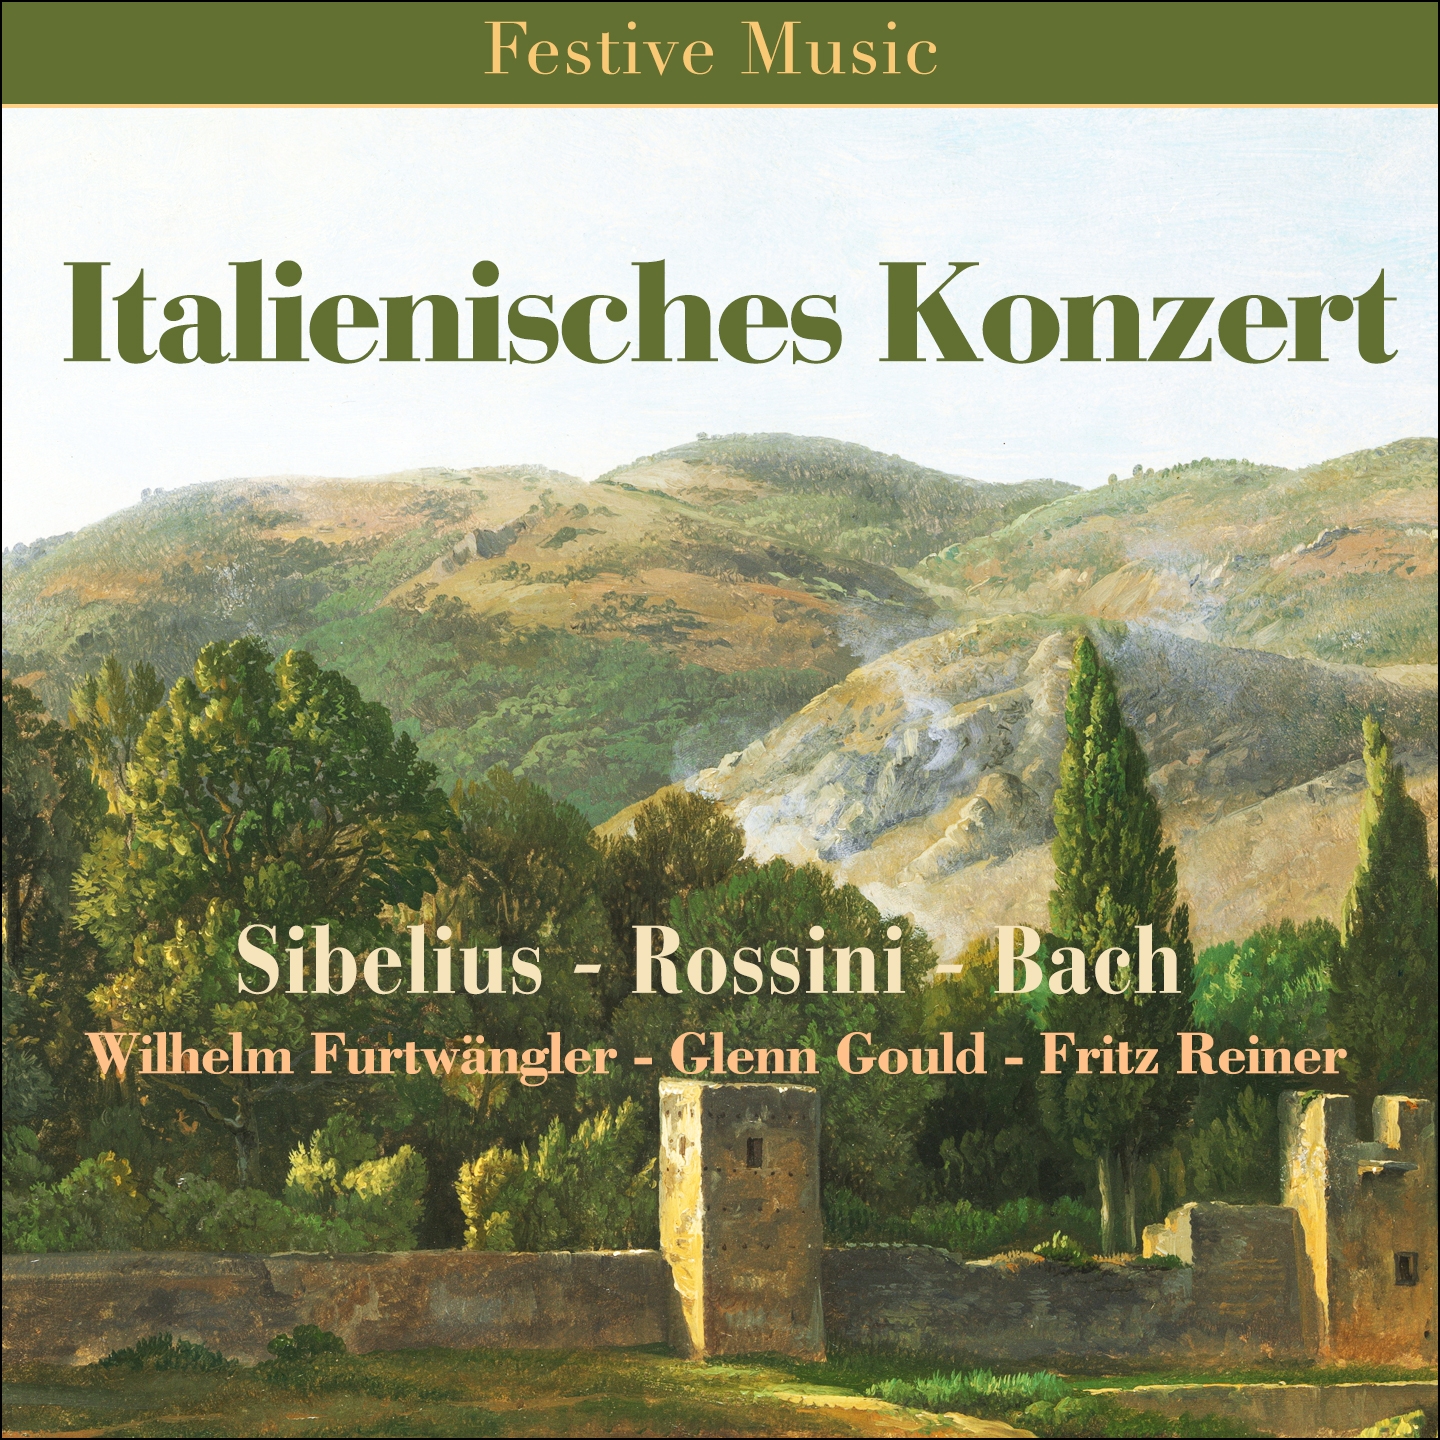 Italian Concerto in F Major, BWV 971: I.